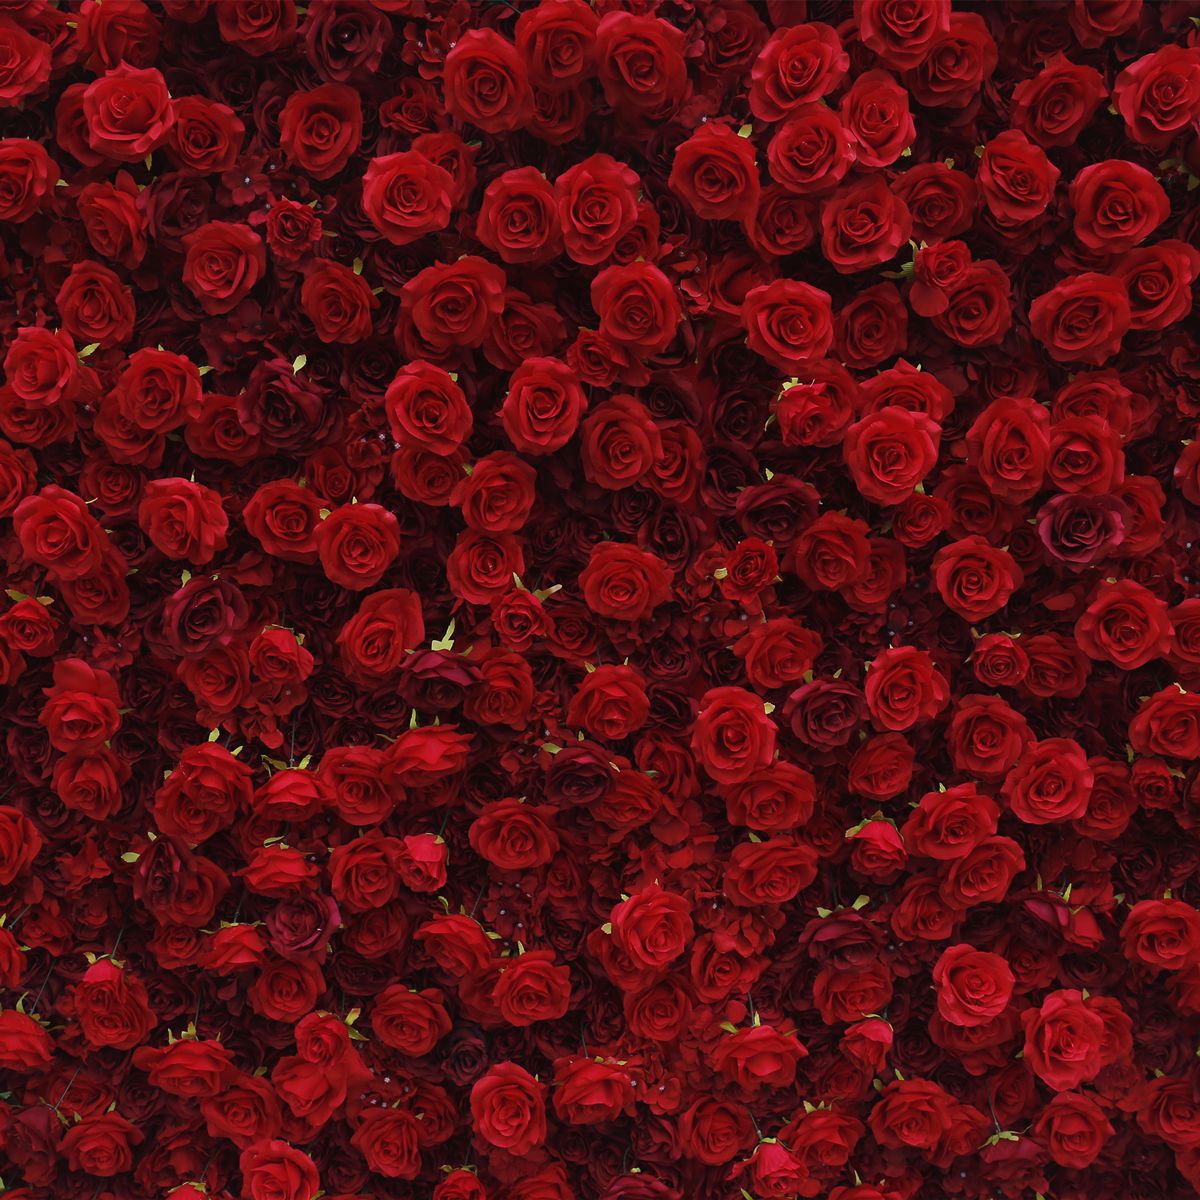 Rode 5D doek bodem simulatie bloem muur achtergrond muur Amazon buitenlandse handel buiten bruiloft decoratie